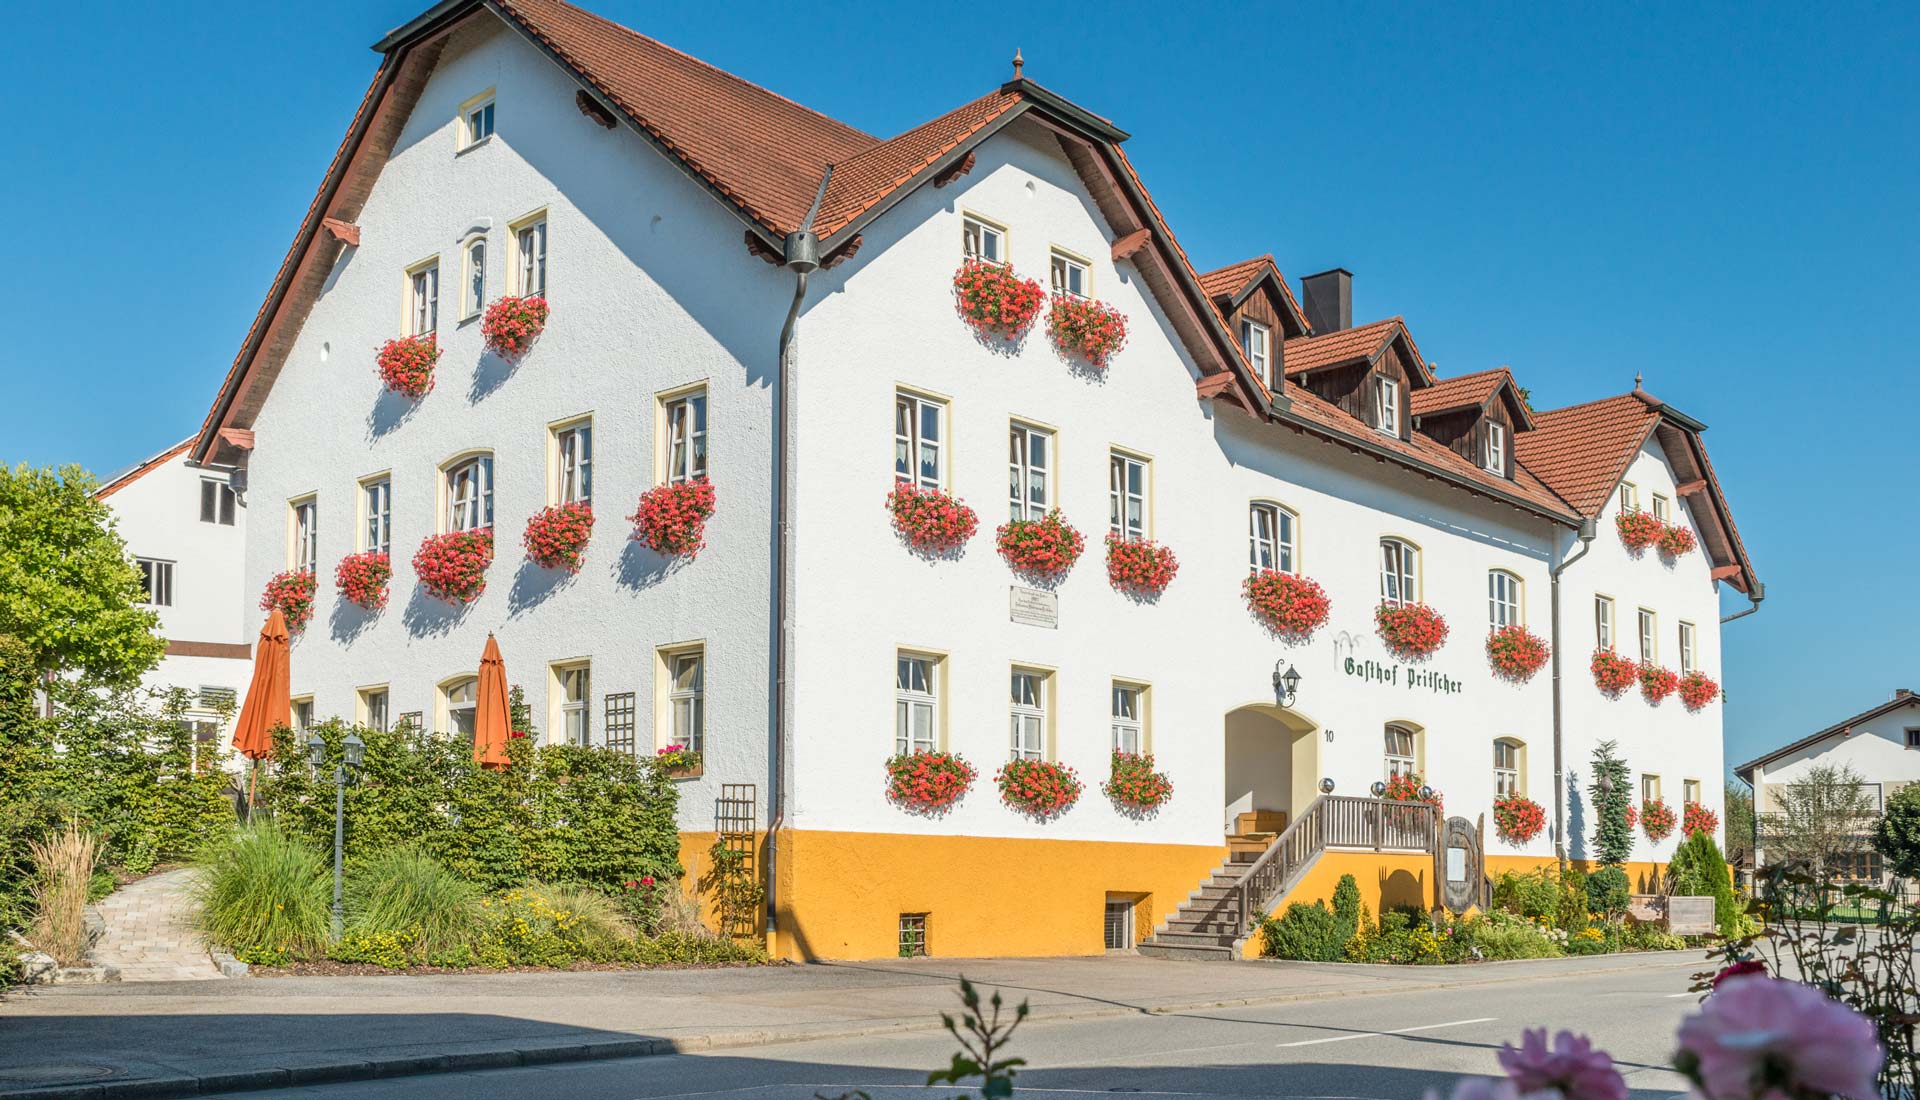 Gasthof und Hotel Pritscher in Bayerbach